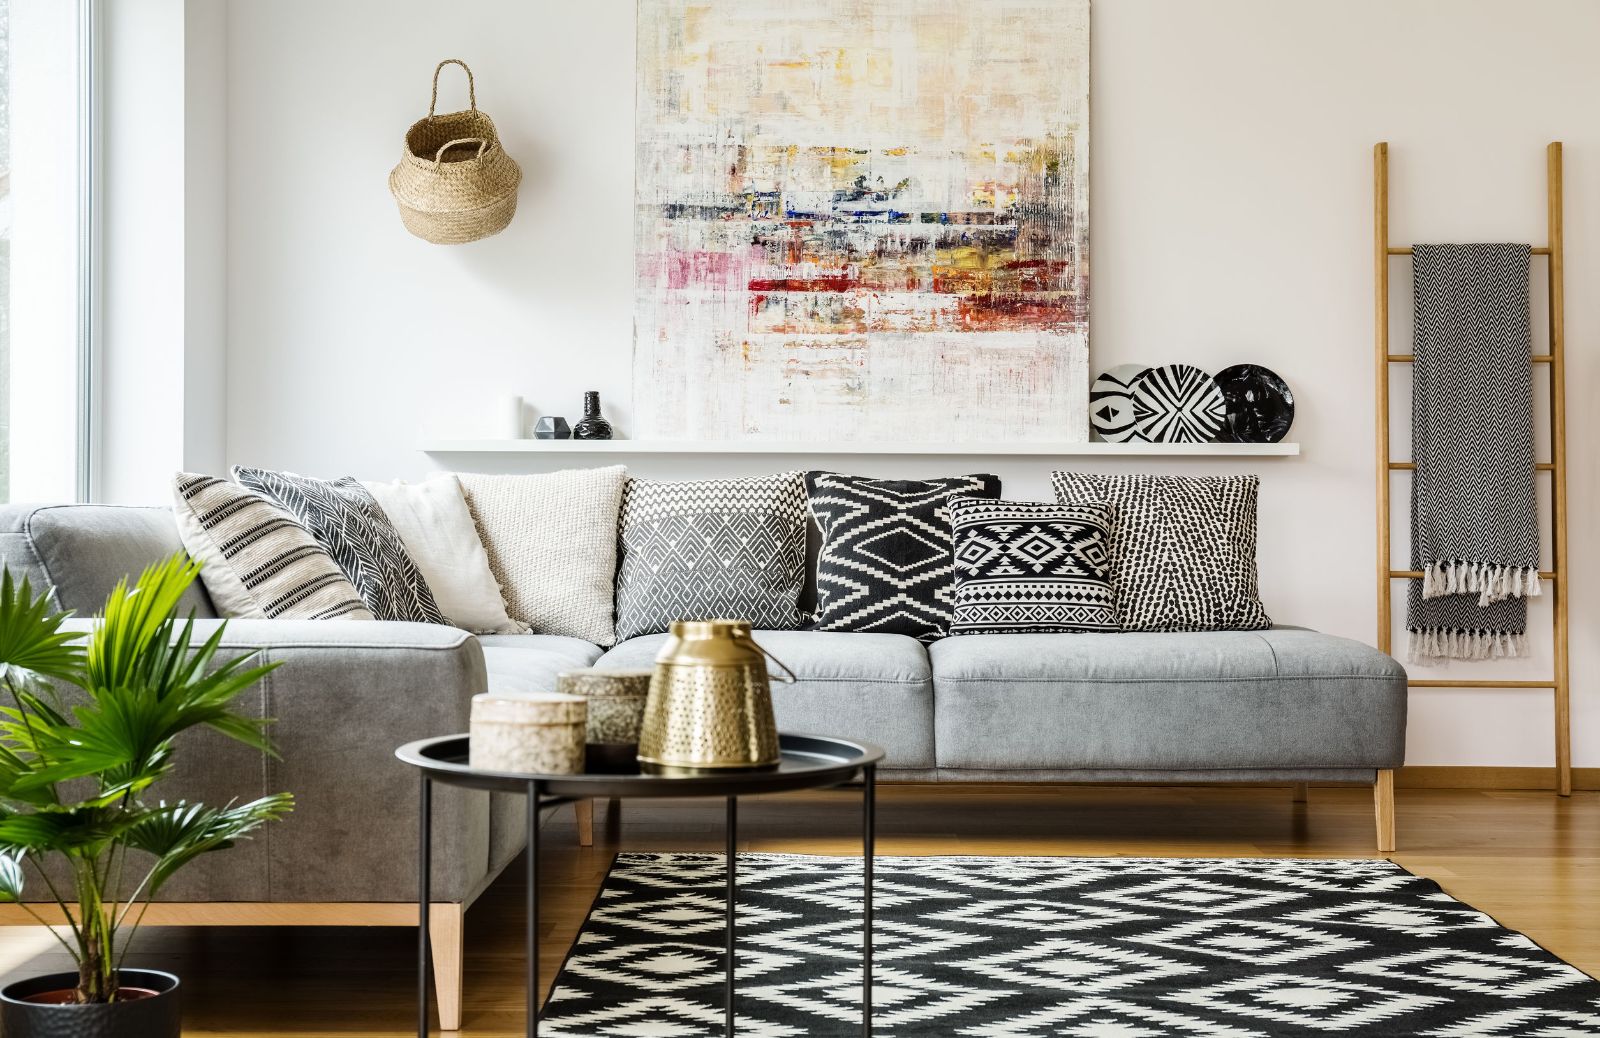 Cuscini Ikea: 5 bellissimi modelli per il divano